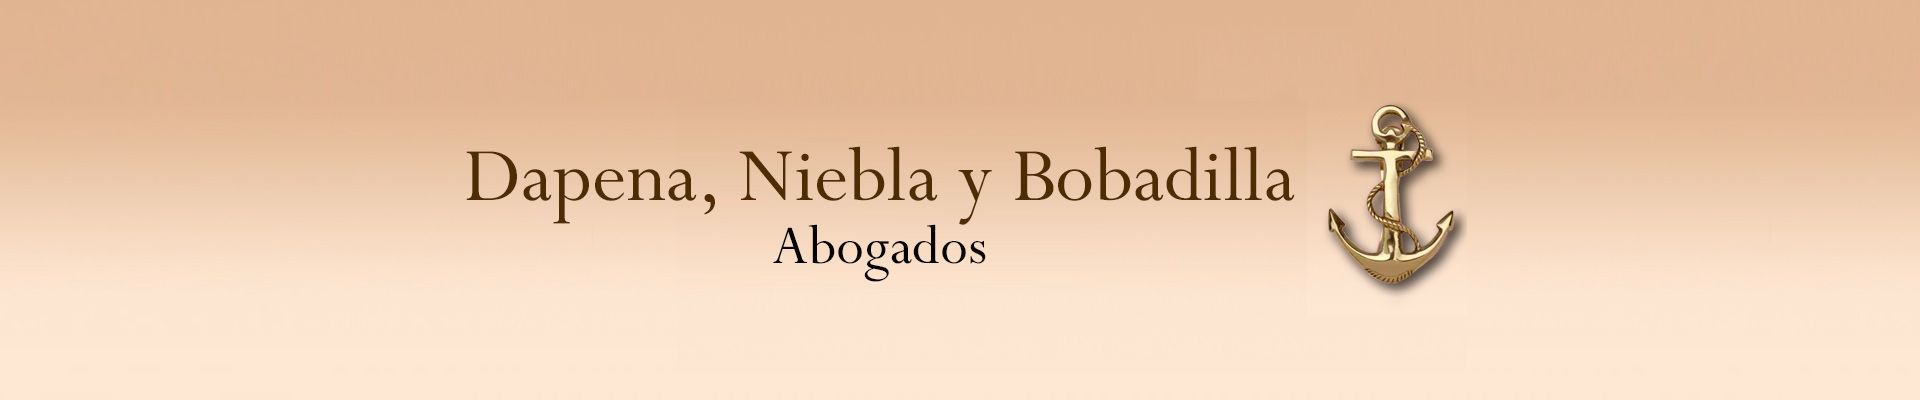 Dapena, Niebla y Bobadilla Abogados logo